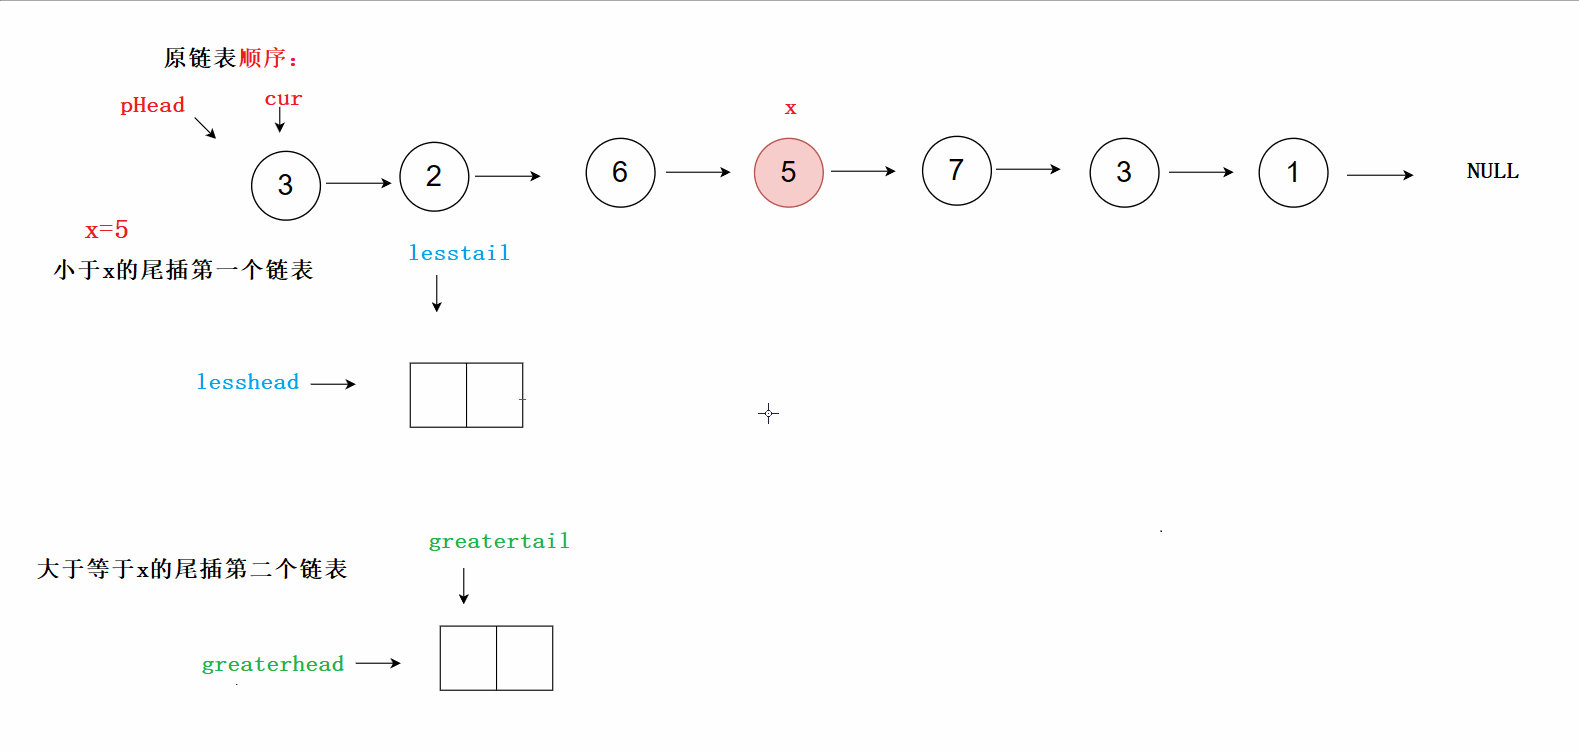 【链表OJ】链表中倒数第k个结点 合并两个链表(含哨兵位) 分割链表 链表的回文结构,C--数据结构刷题,链表,数据结构,算法,c语言,笔记,开发语言